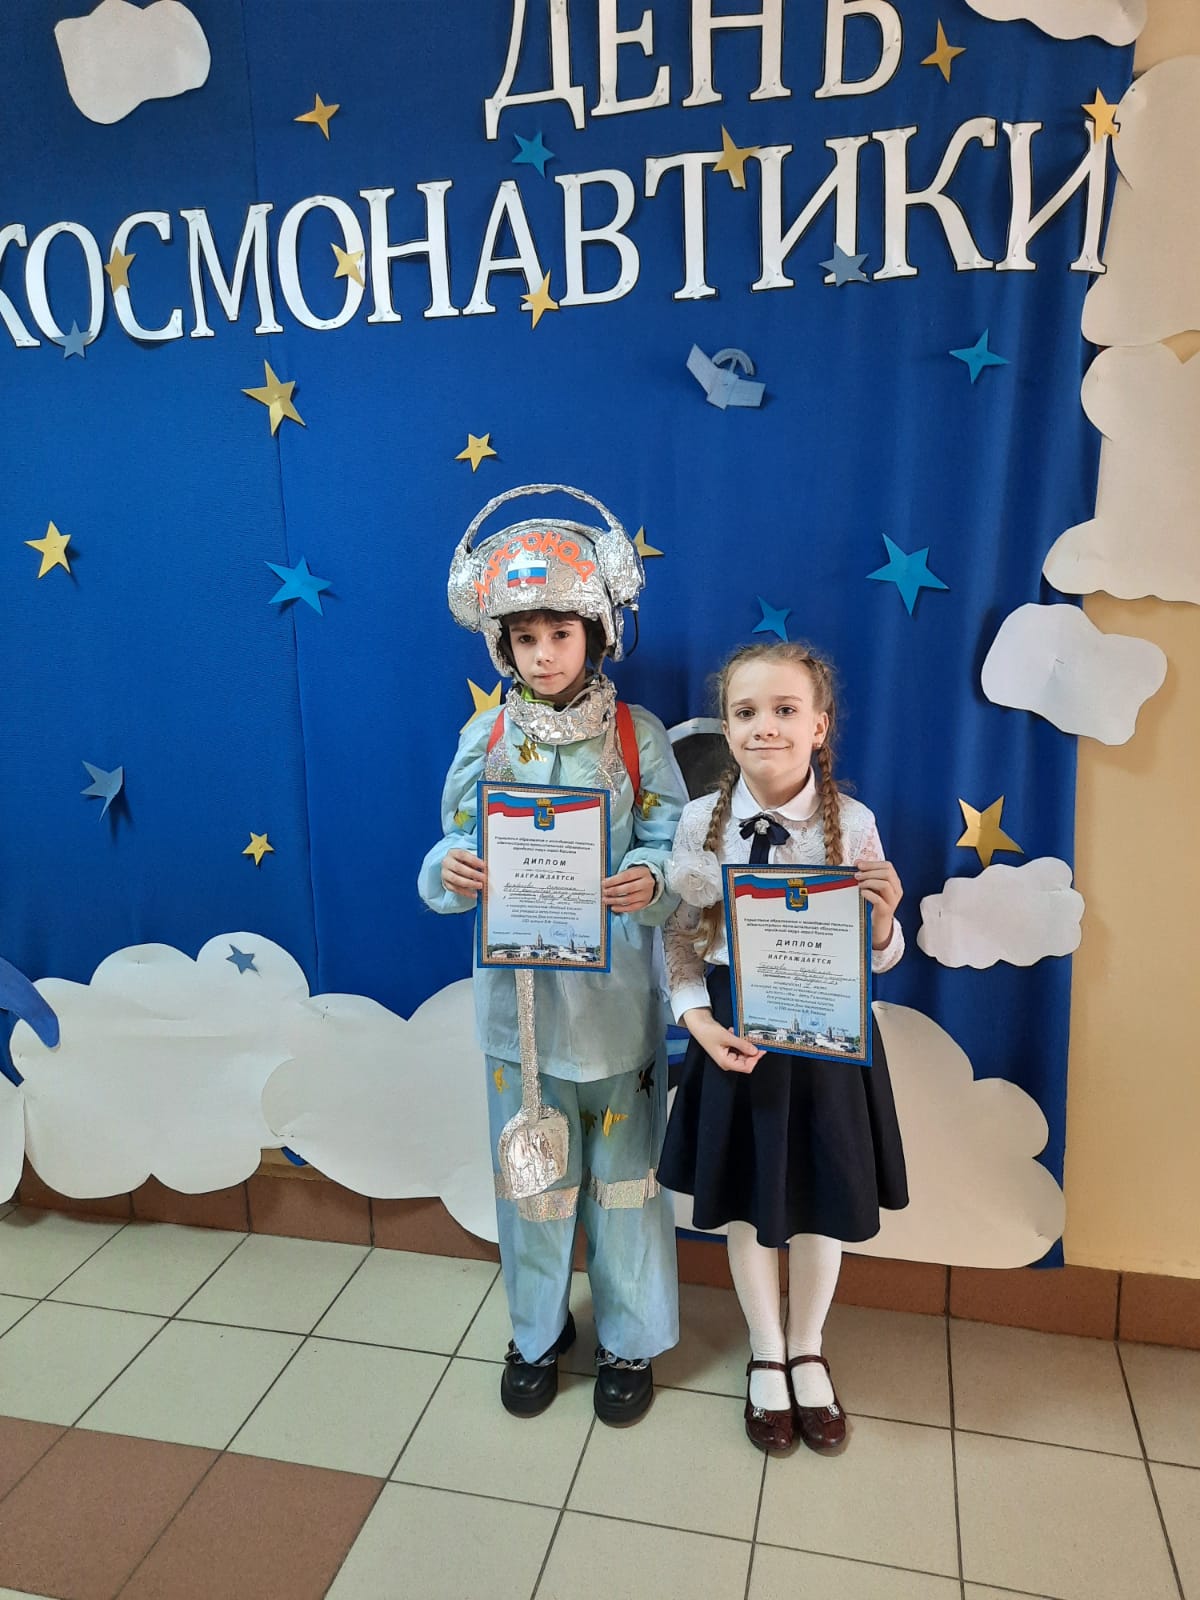 Мероприятия ко Дню космонавтики. День космонавтики мероприятия в школе. День космонавтики события